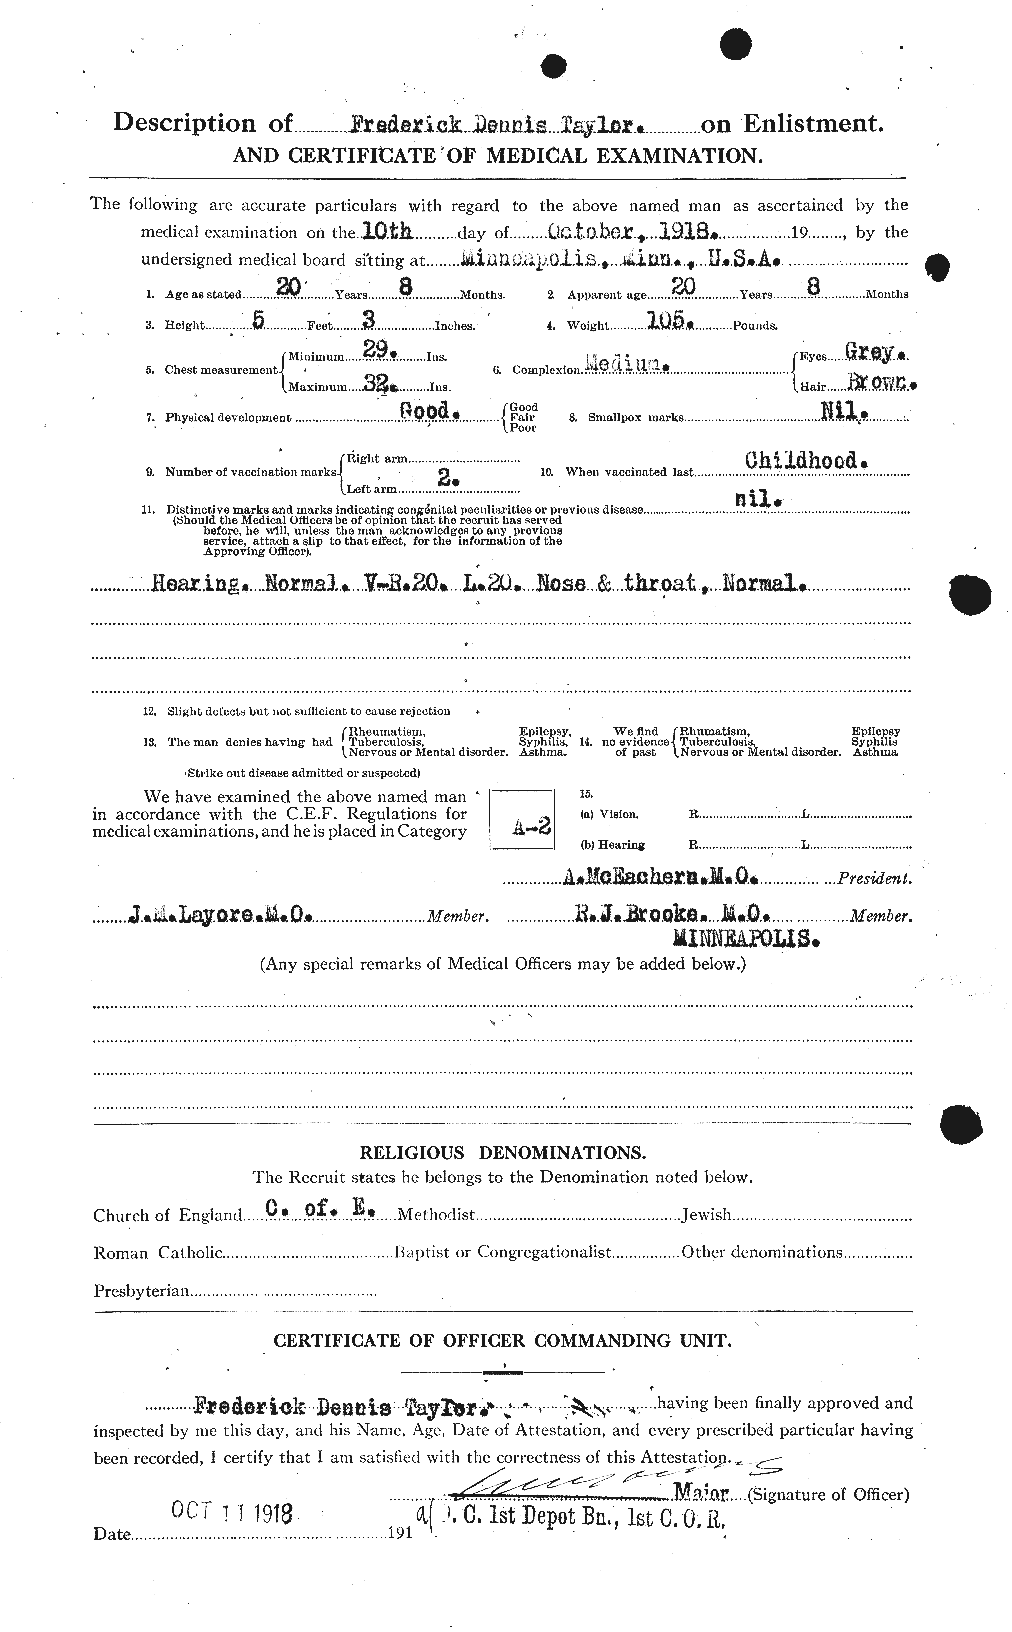 Dossiers du Personnel de la Première Guerre mondiale - CEC 625795b